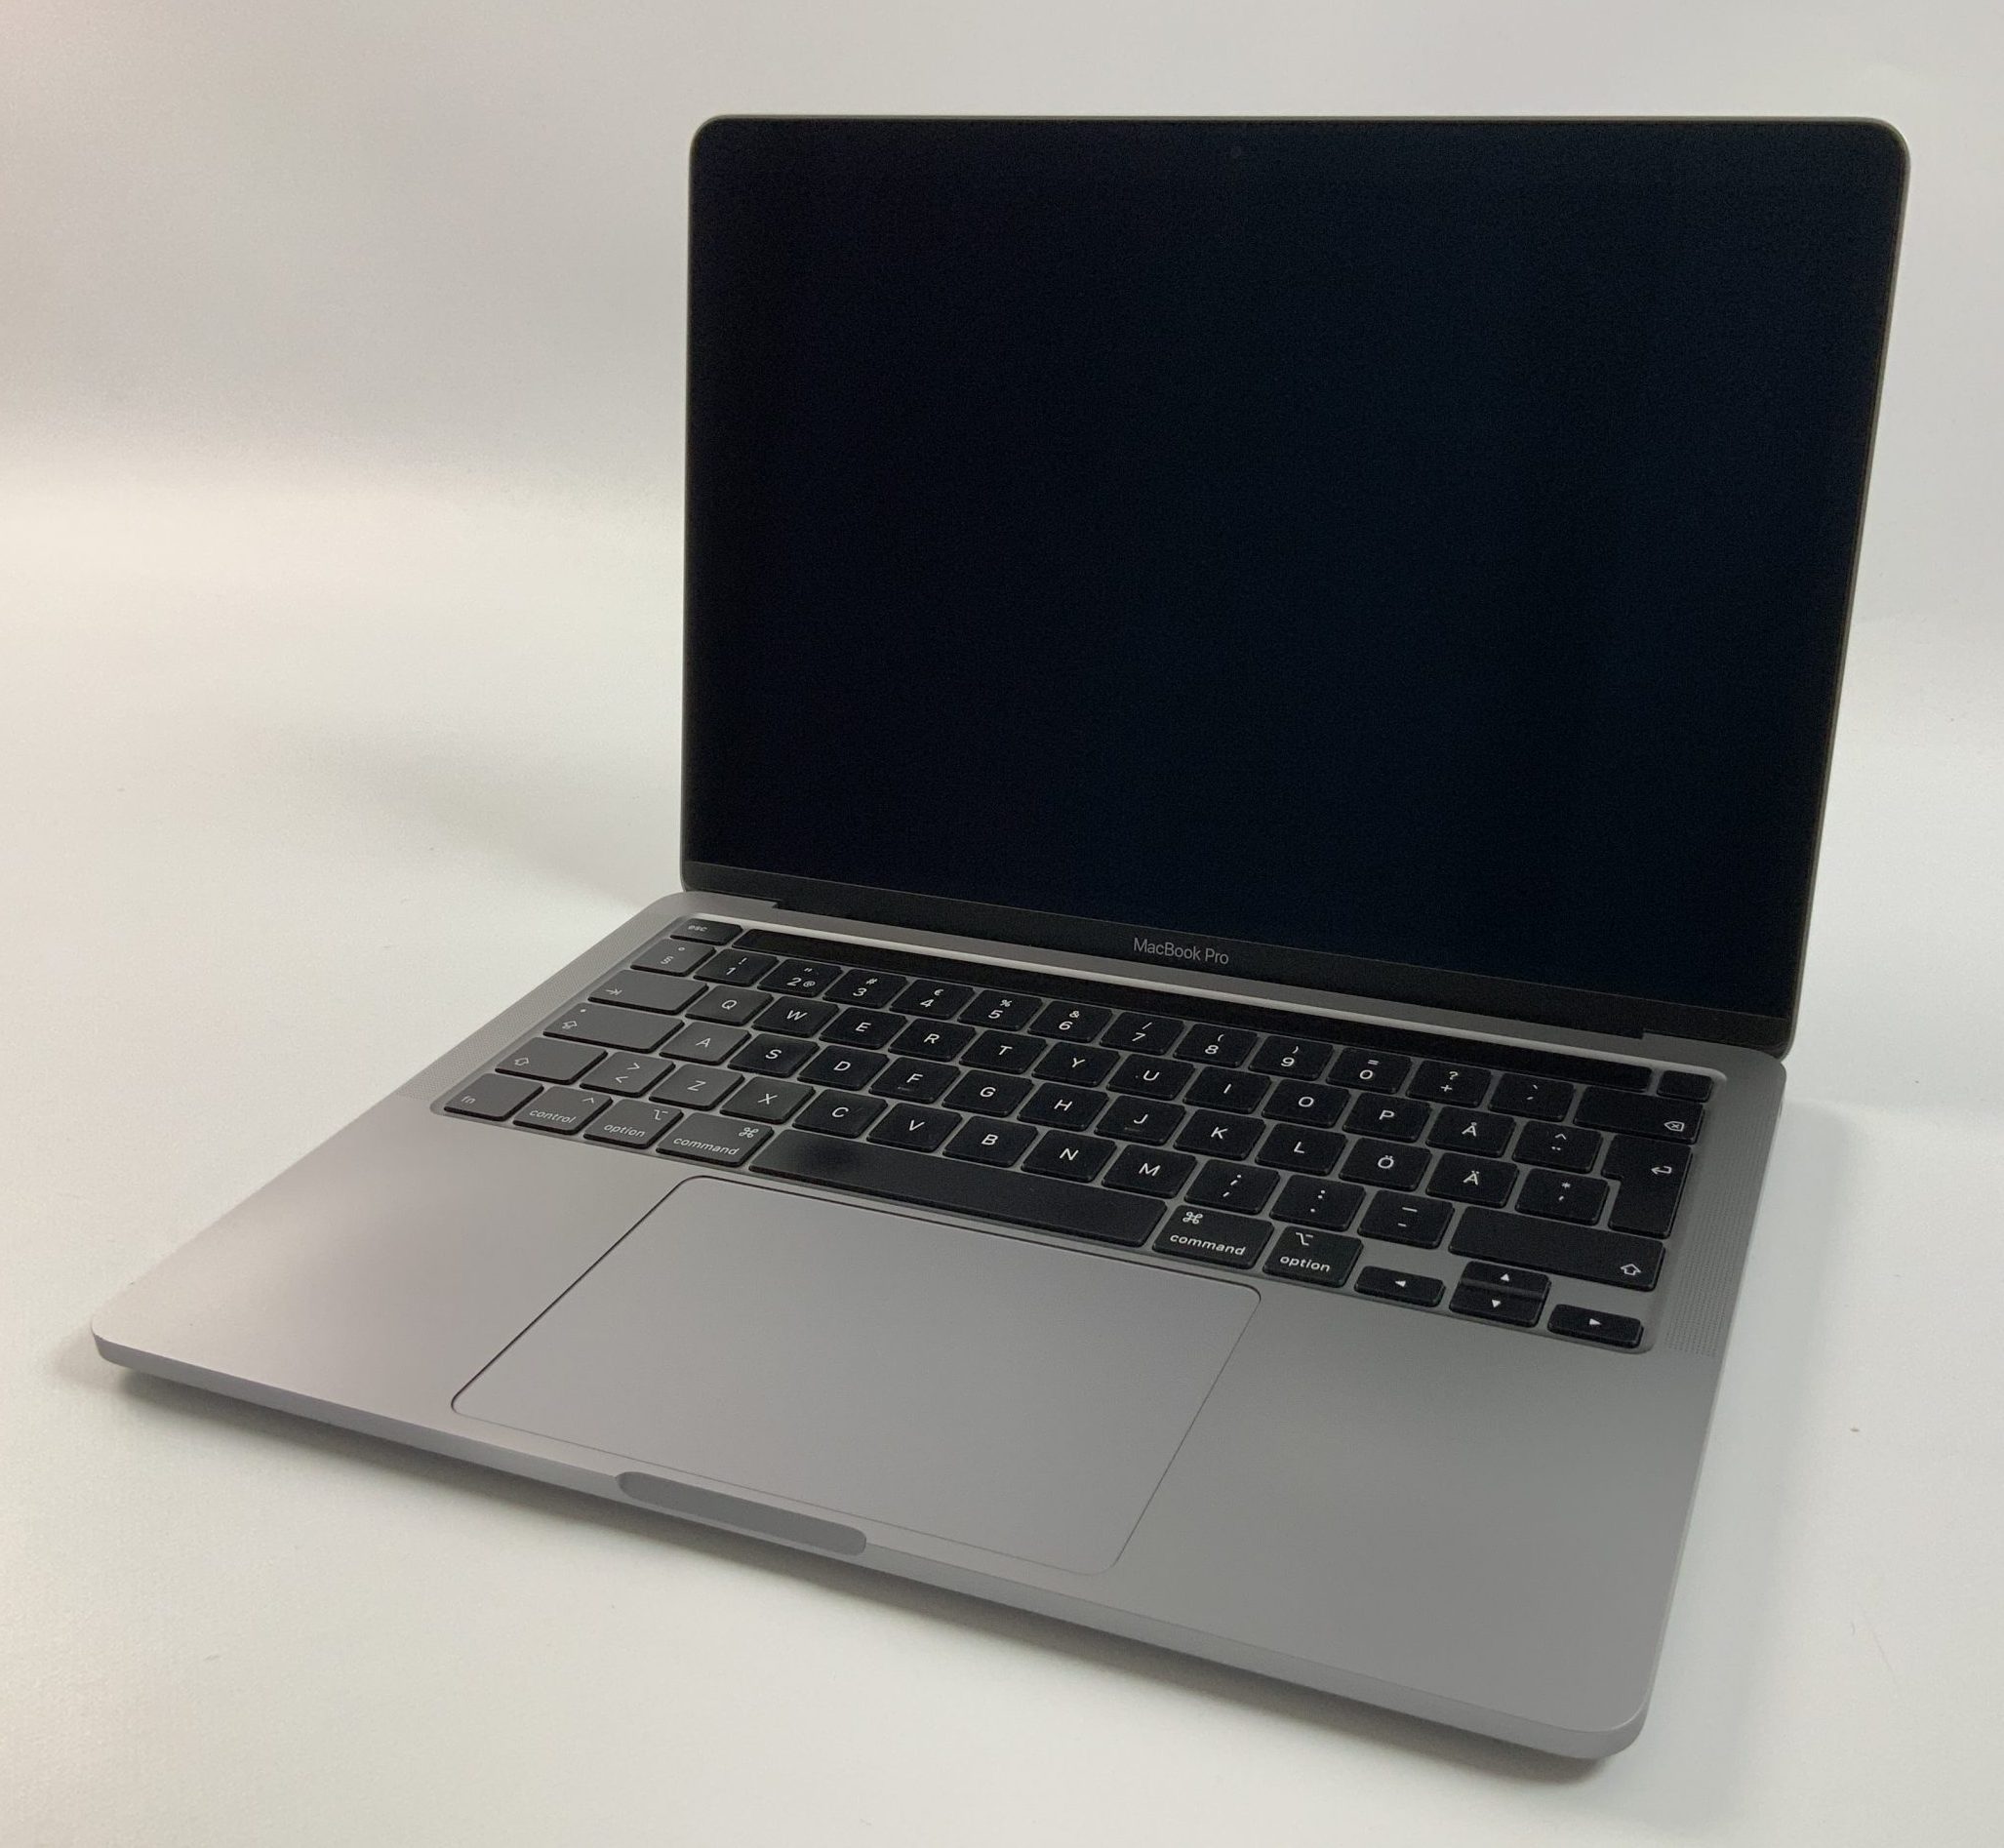 MacBook Pro 13" 2TBT Mid 2020 (Intel Quad-Core i5 1.4 GHz 8 GB RAM 256 GB SSD), Space Gray, Intel Quad-Core i5 1.4 GHz, 8 GB RAM, 256 GB SSD, Kuva 1